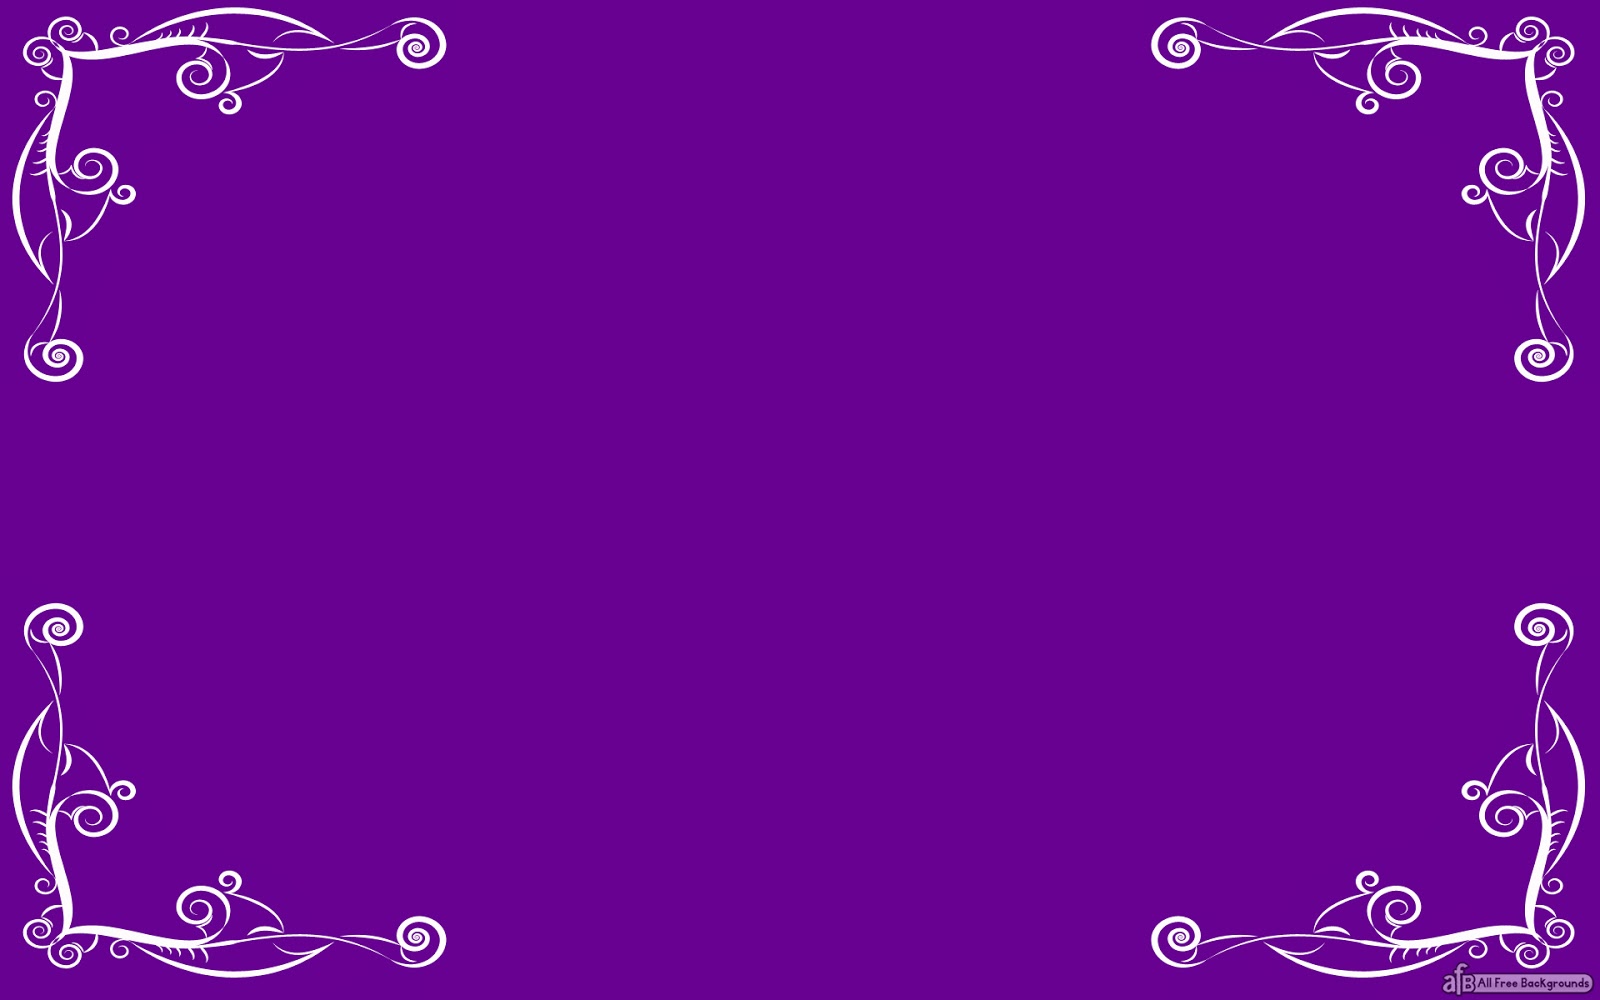 36+] Purple and Gold Wallpaper Border - WallpaperSafari